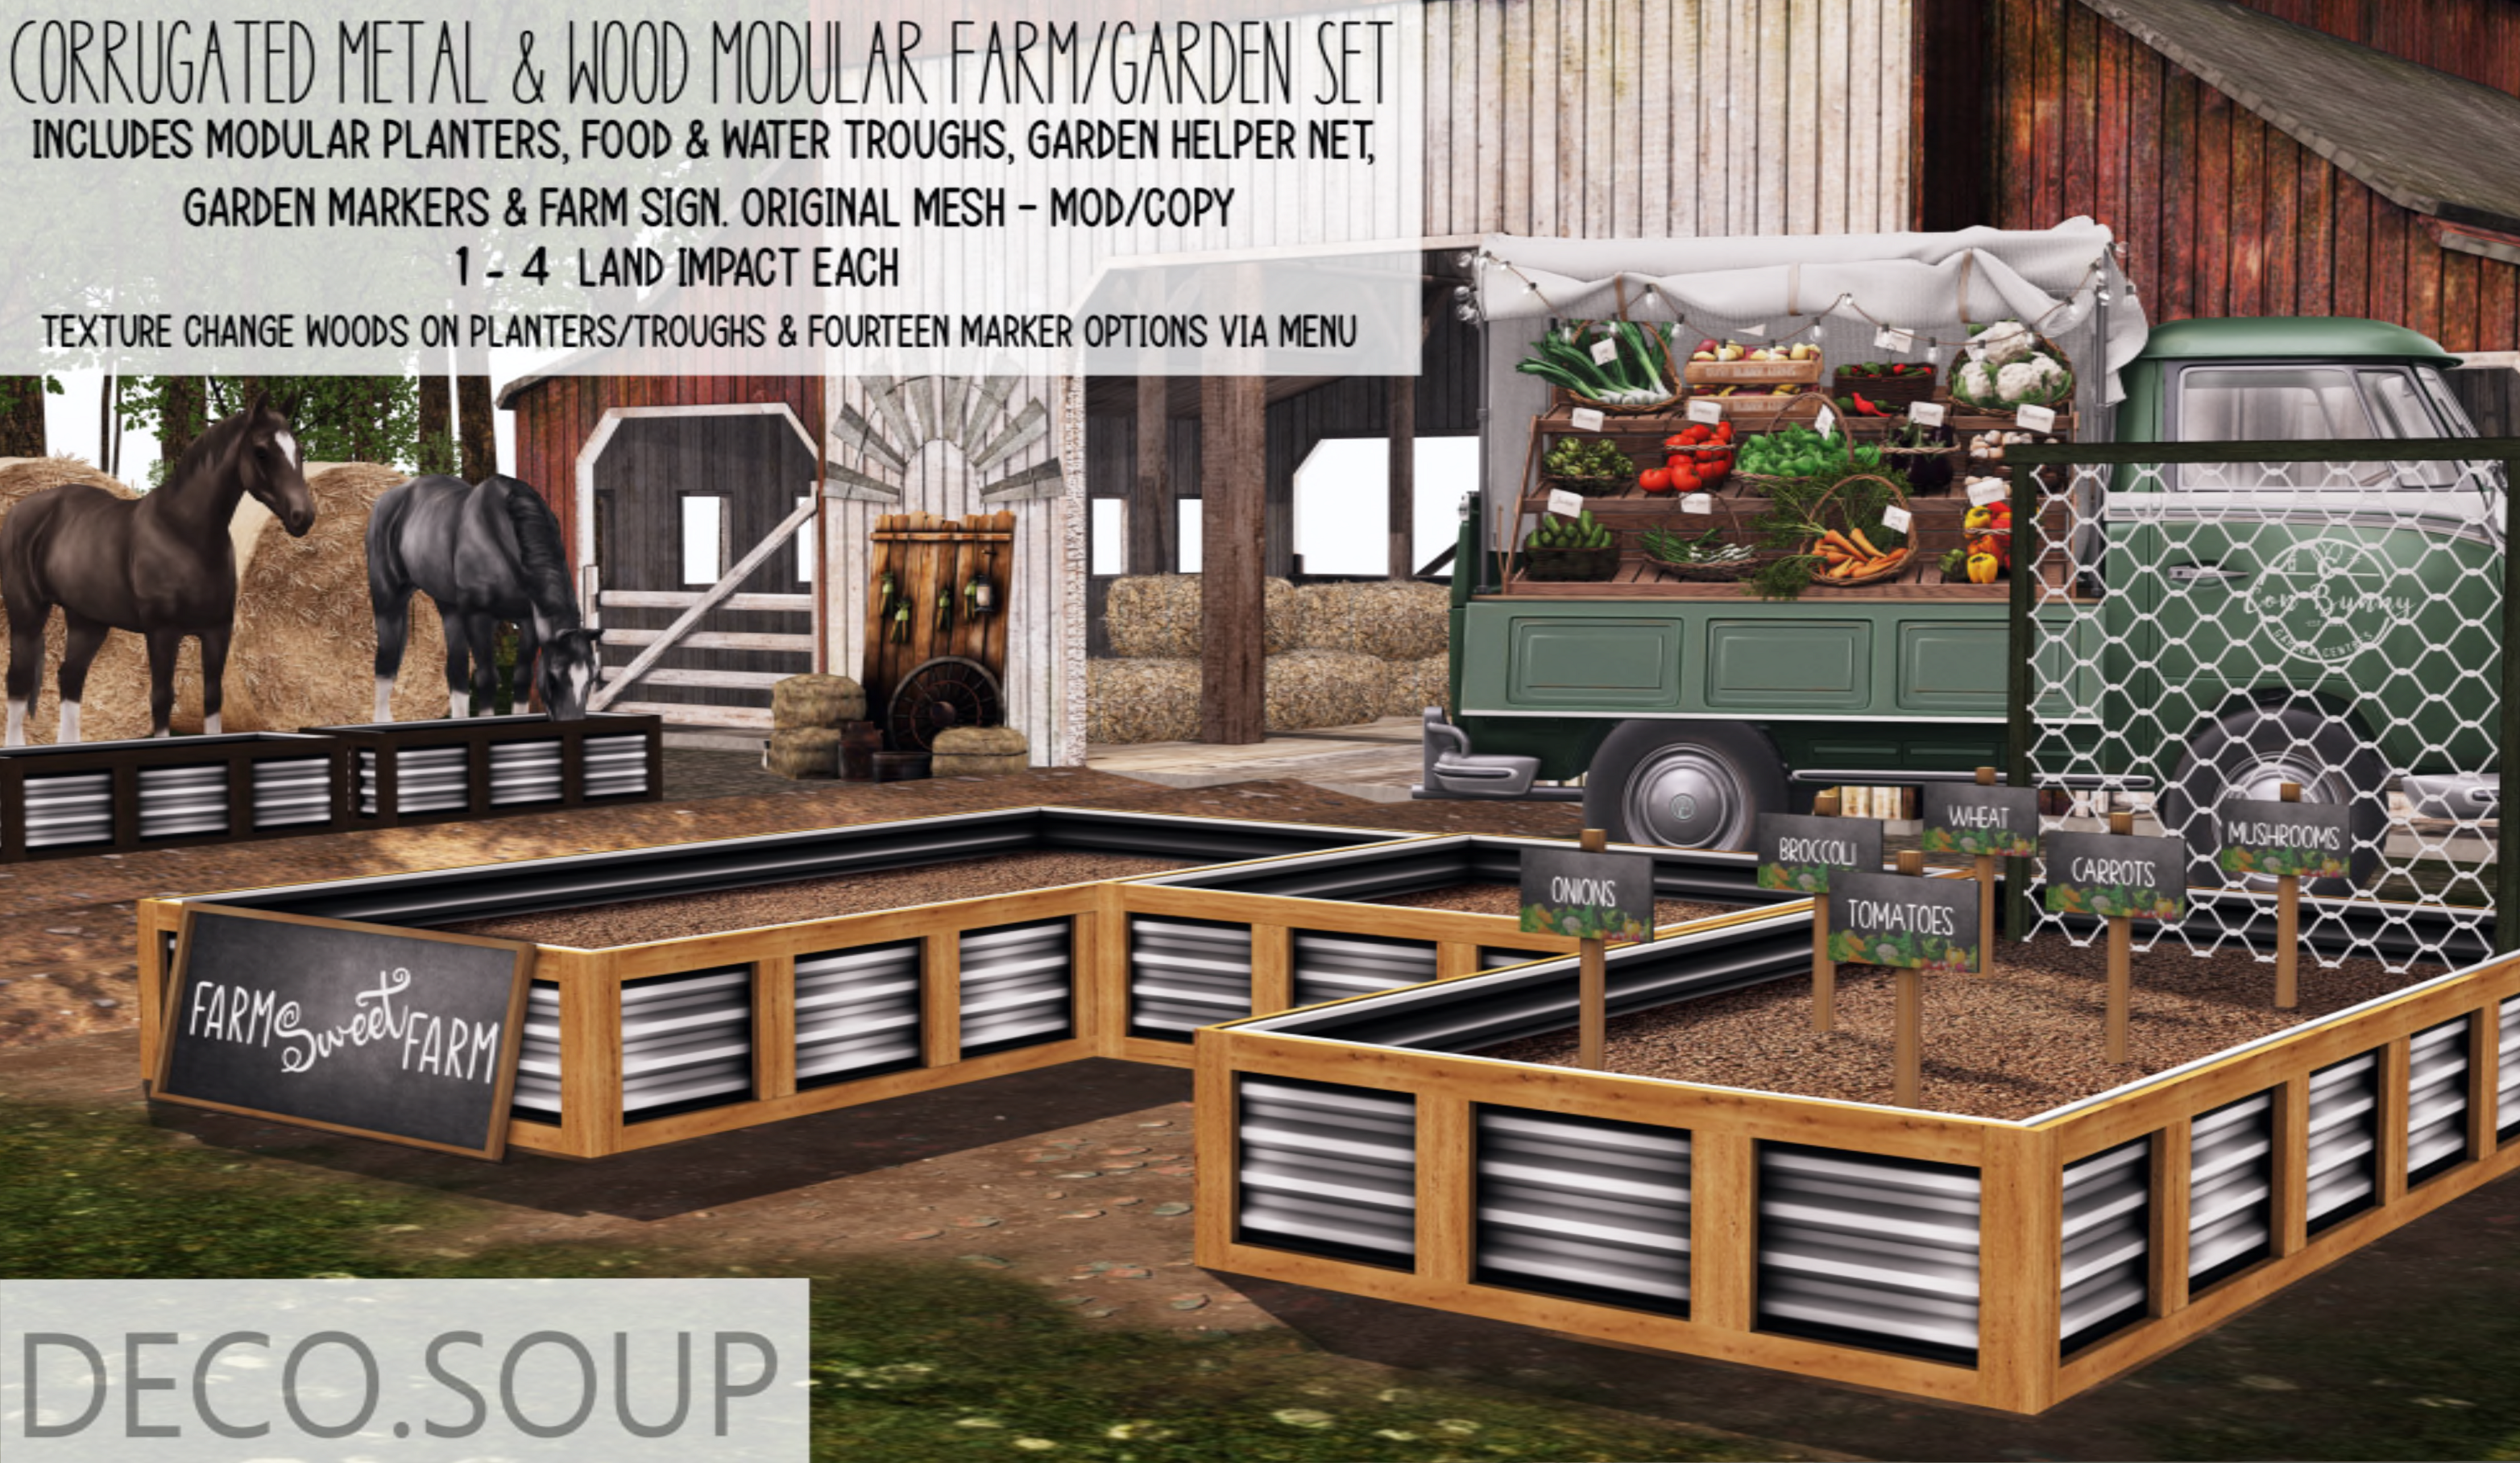 Deco Soup – Modular Farm/Garden Set